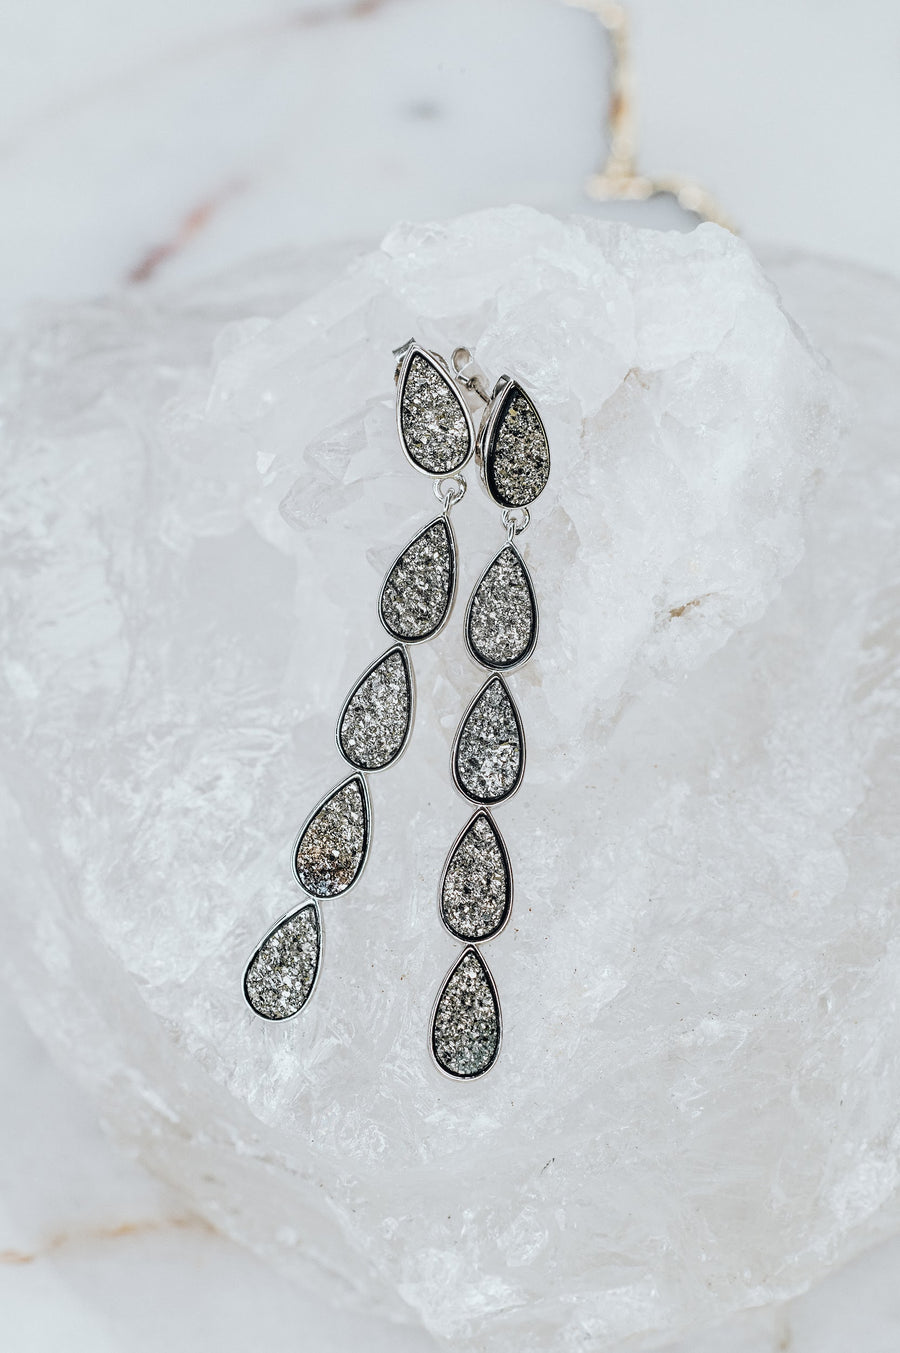 Teardrop quartz druzy earrings